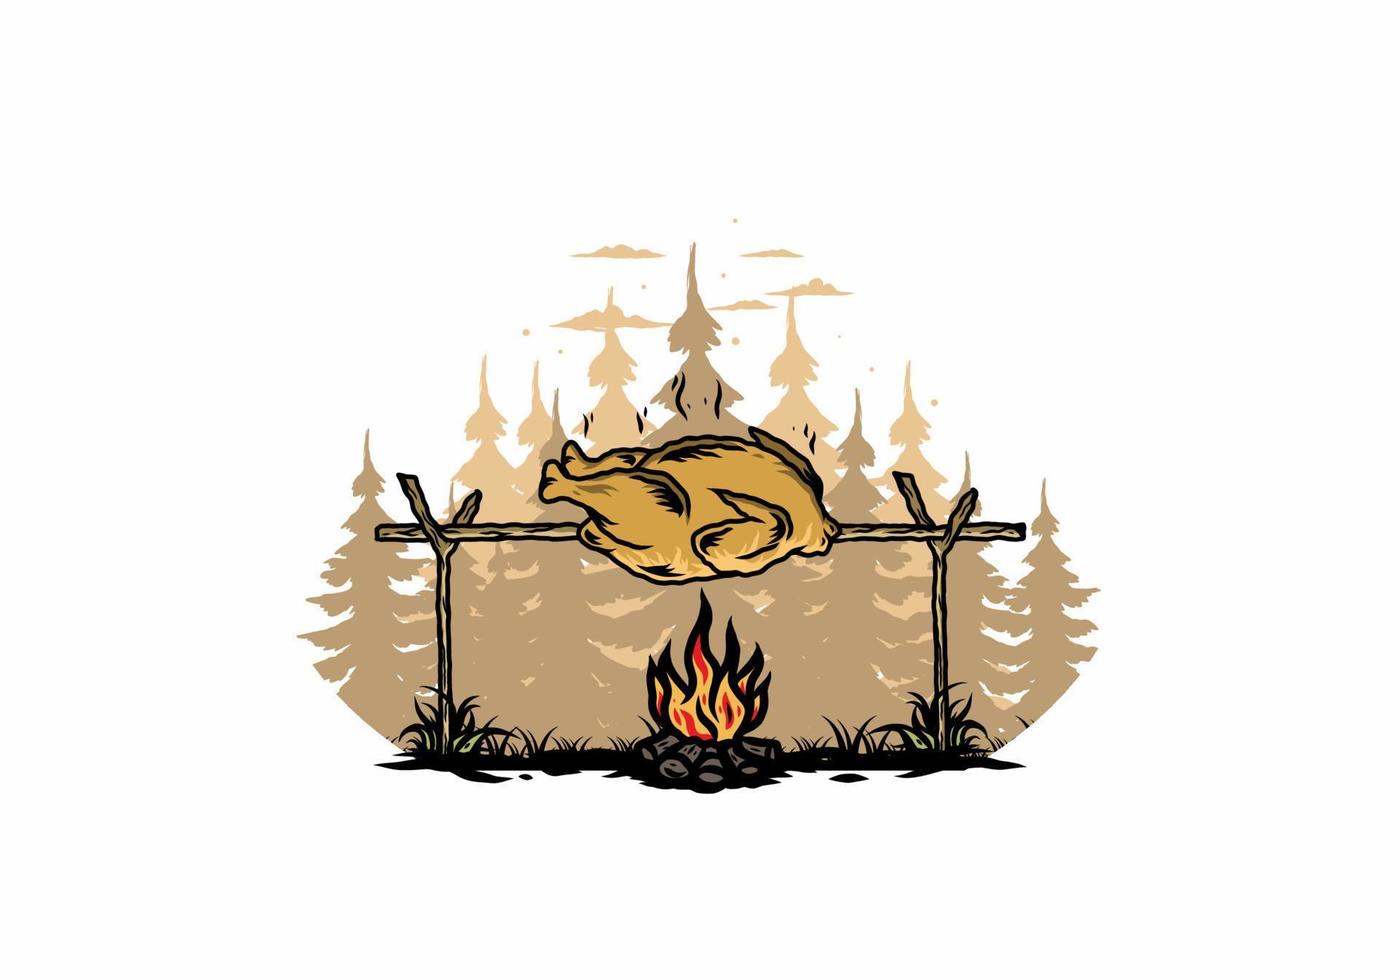 griller du poulet sur la conception d'illustration de feu de joie vecteur